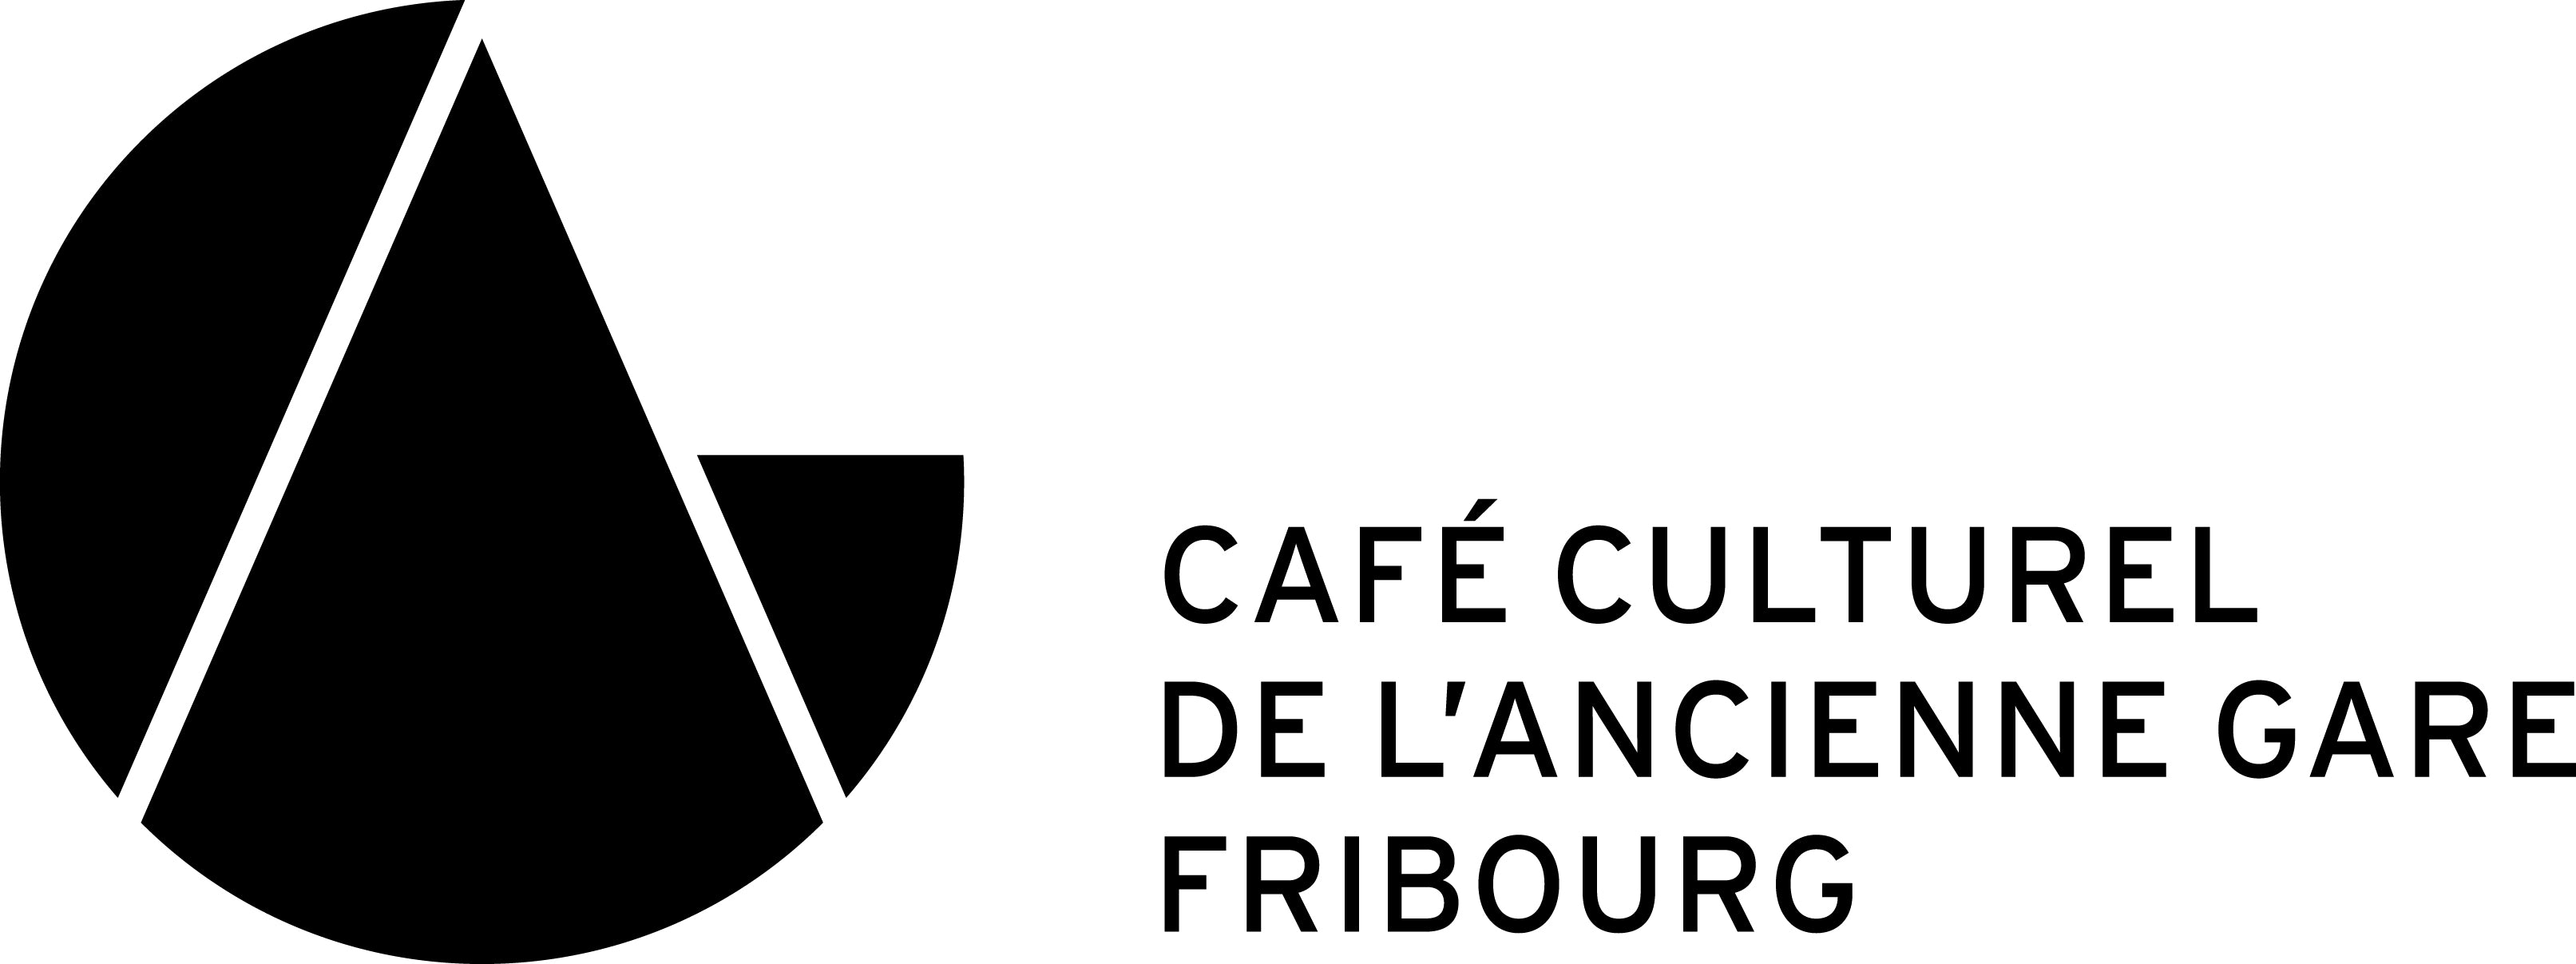 Café Culturel de l'Ancienne Gare